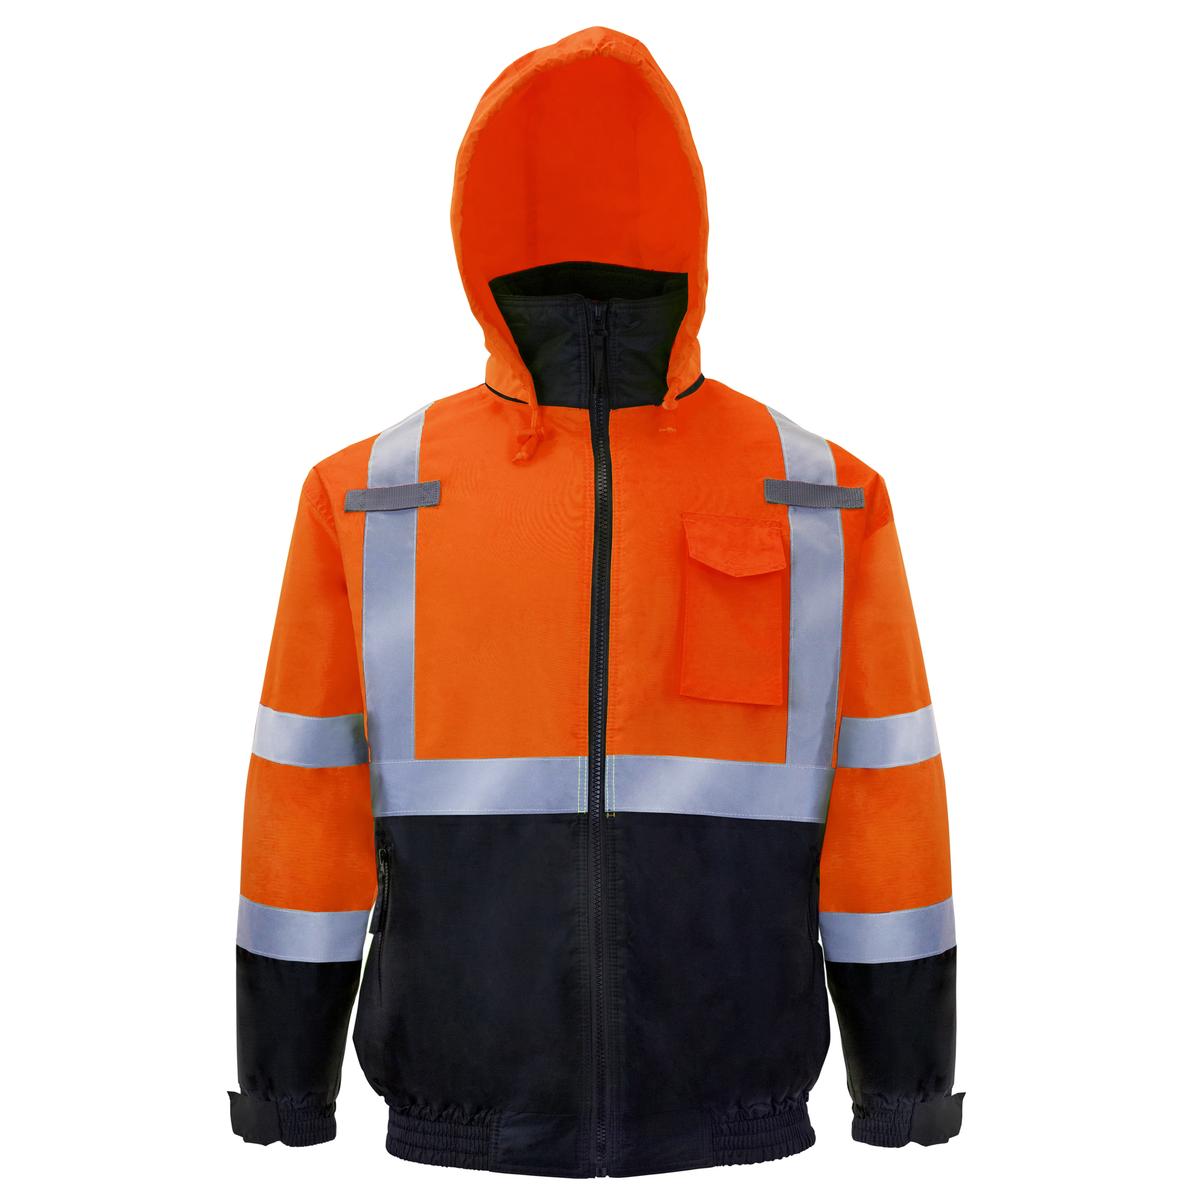 Heavy-Duty Safety Jacket with Heat-Transfer Reflective Stripes | Technopack Safety & PPE S / Black by JORESTECH